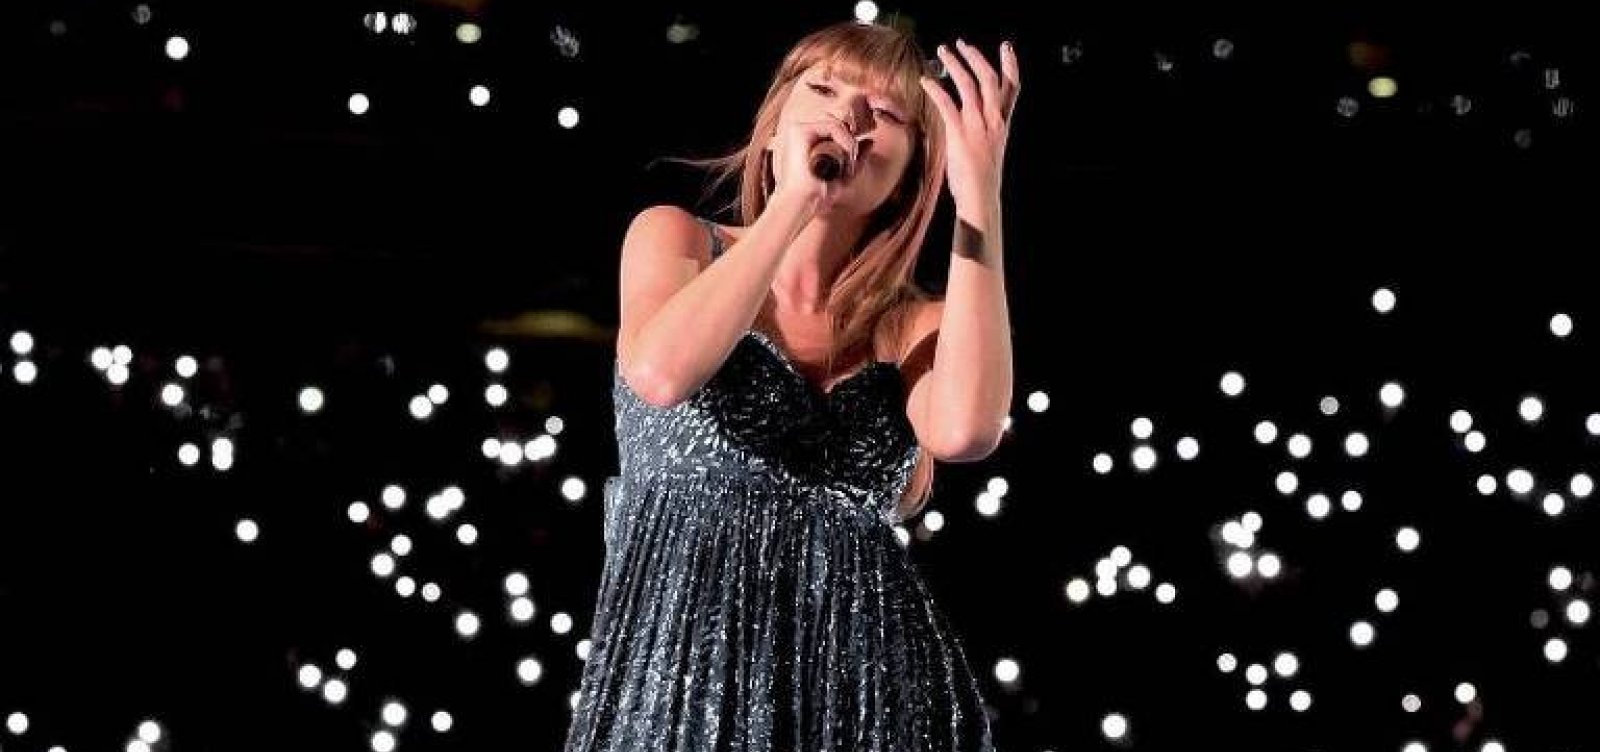 Produtora dos shows de Taylor Swift pode ser multada em até R$ 13 milhões pelo Procon do Rio